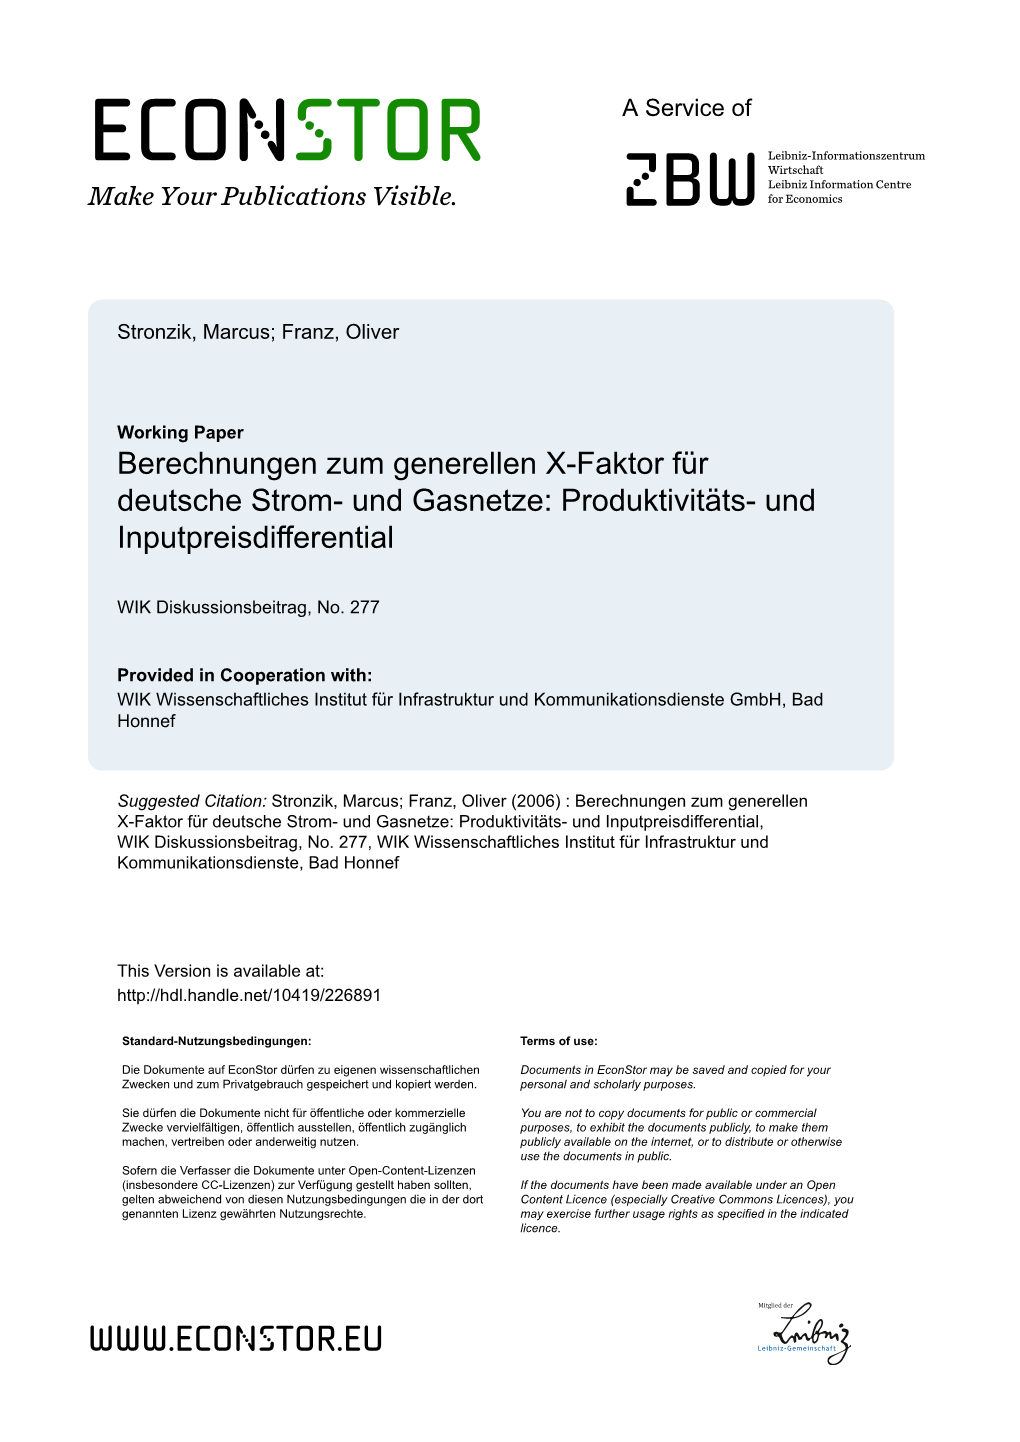 Berechnungen Zum Generellen X-Faktor Für Deutsche Strom- Und Gasnetze: Produktivitäts- Und Inputpreisdifferential